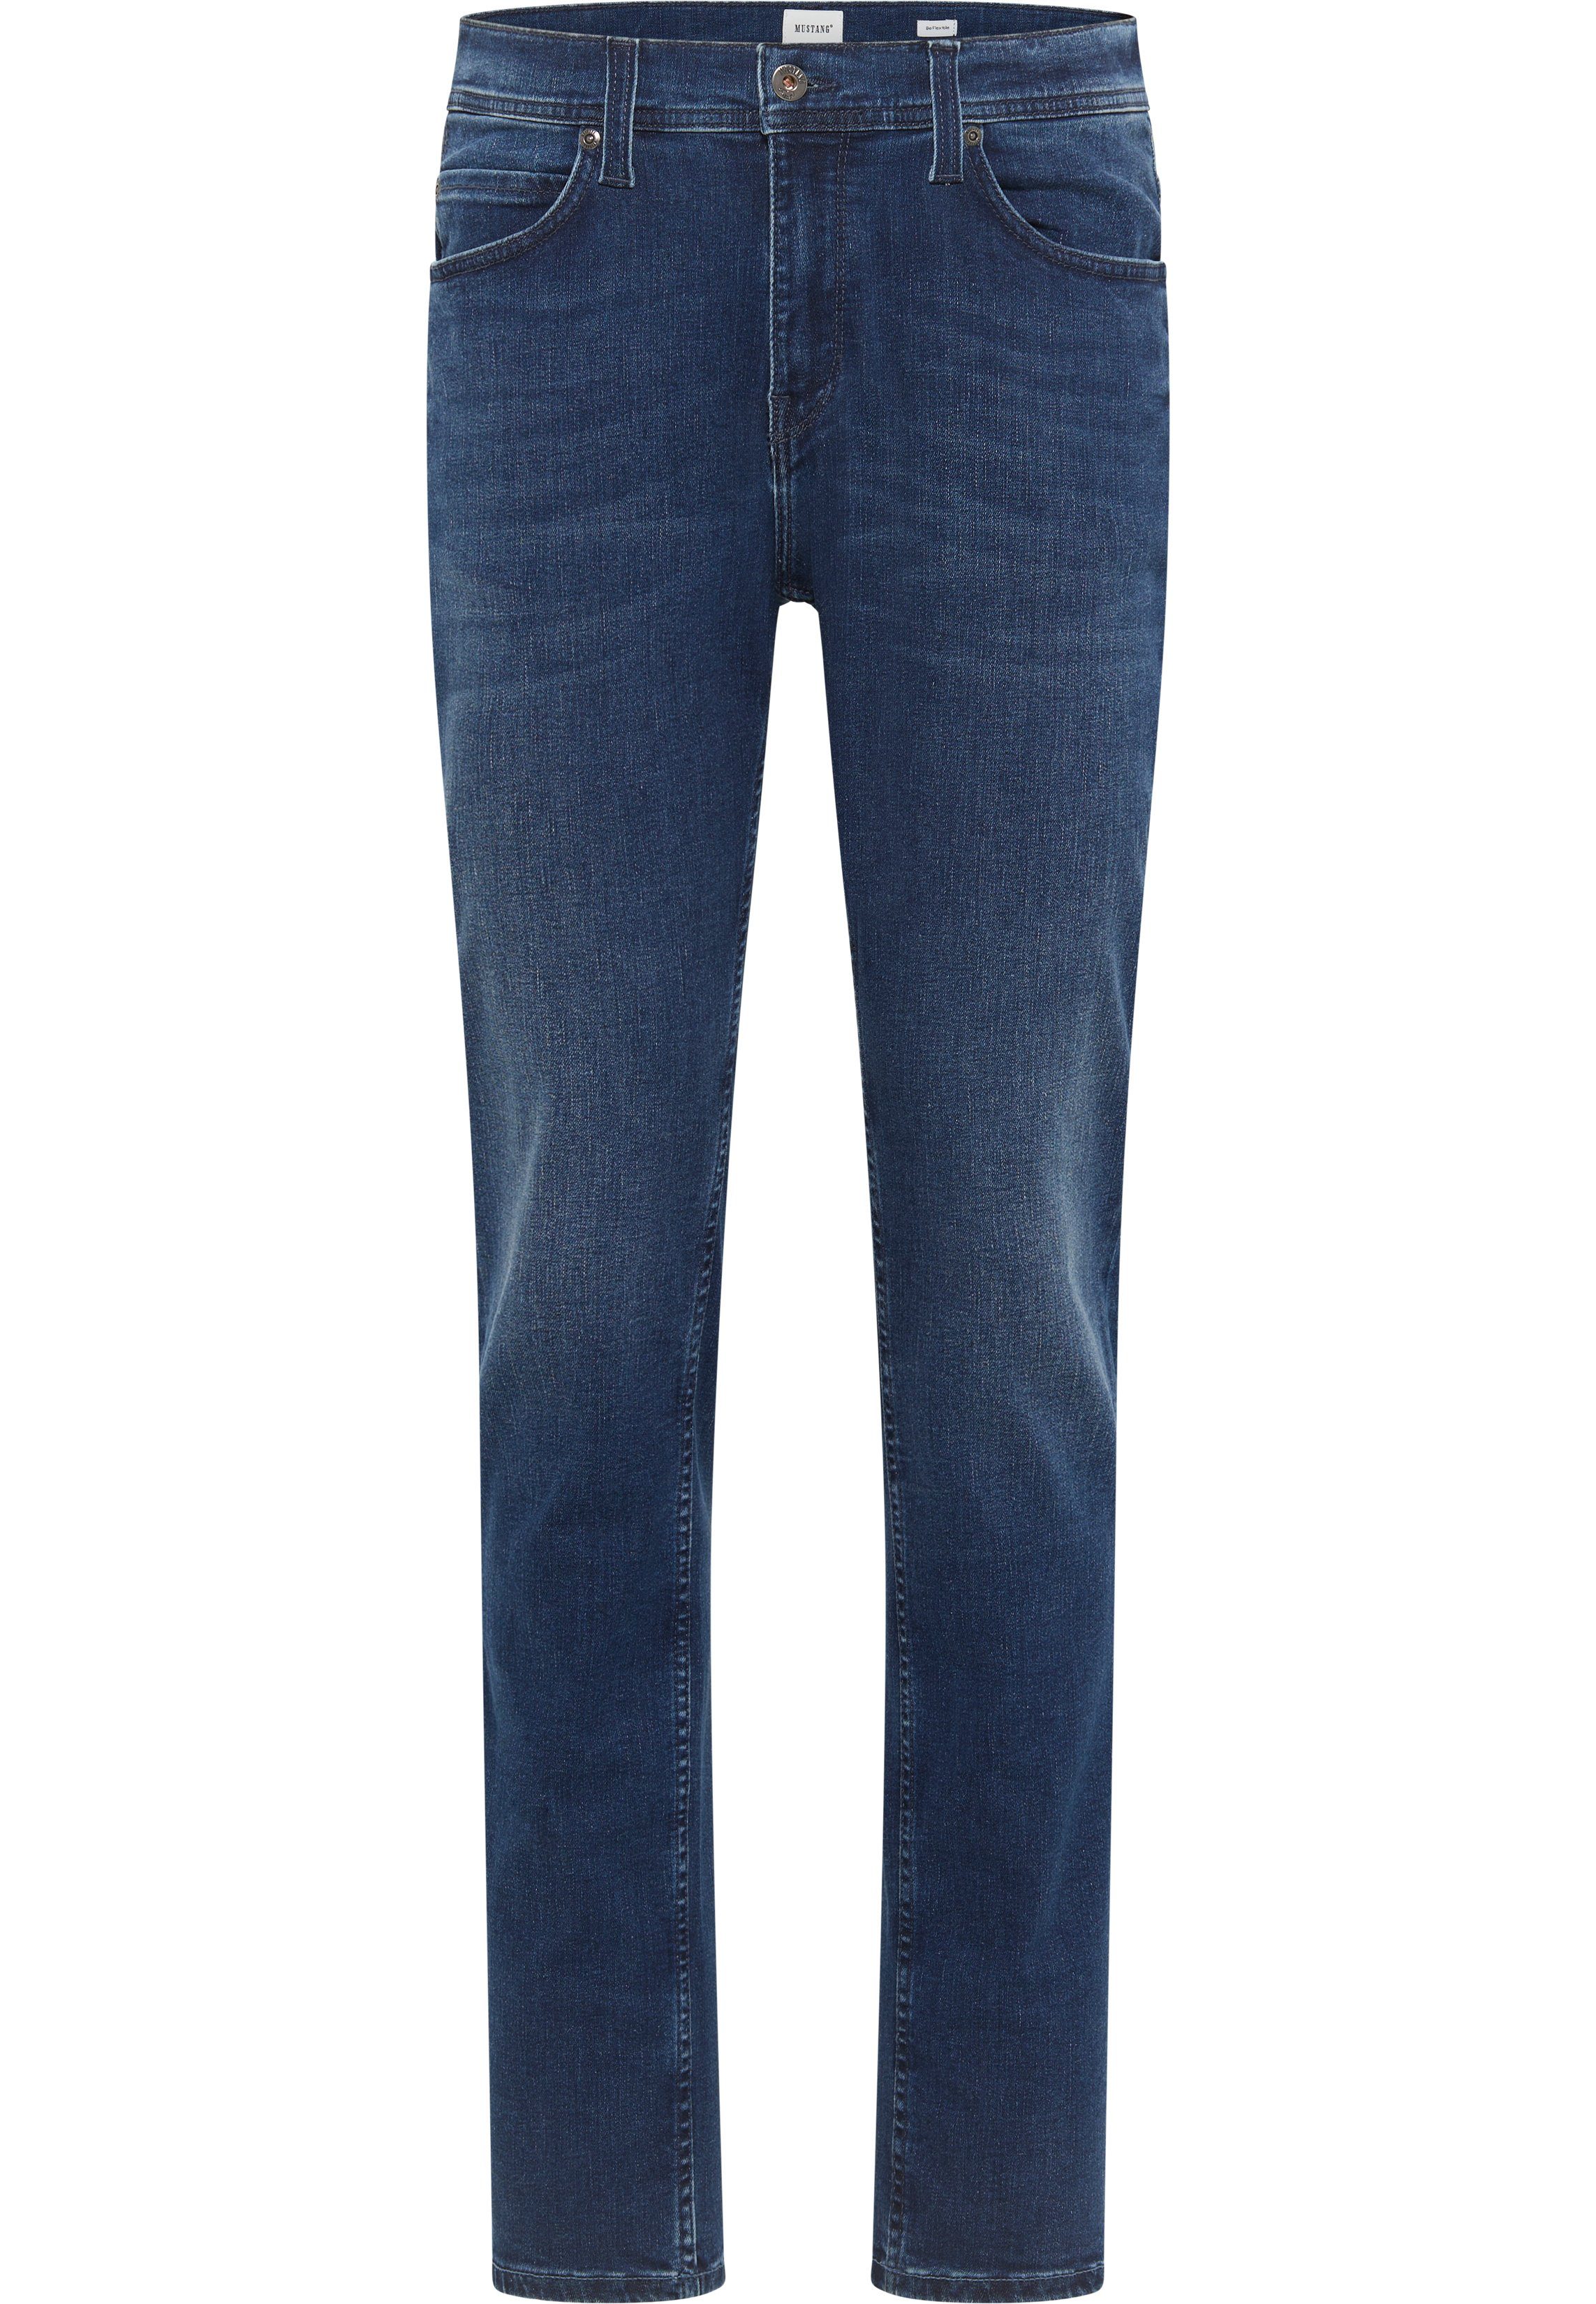 MUSTANG Slim-fit-Jeans Style Vegas blau-5000982